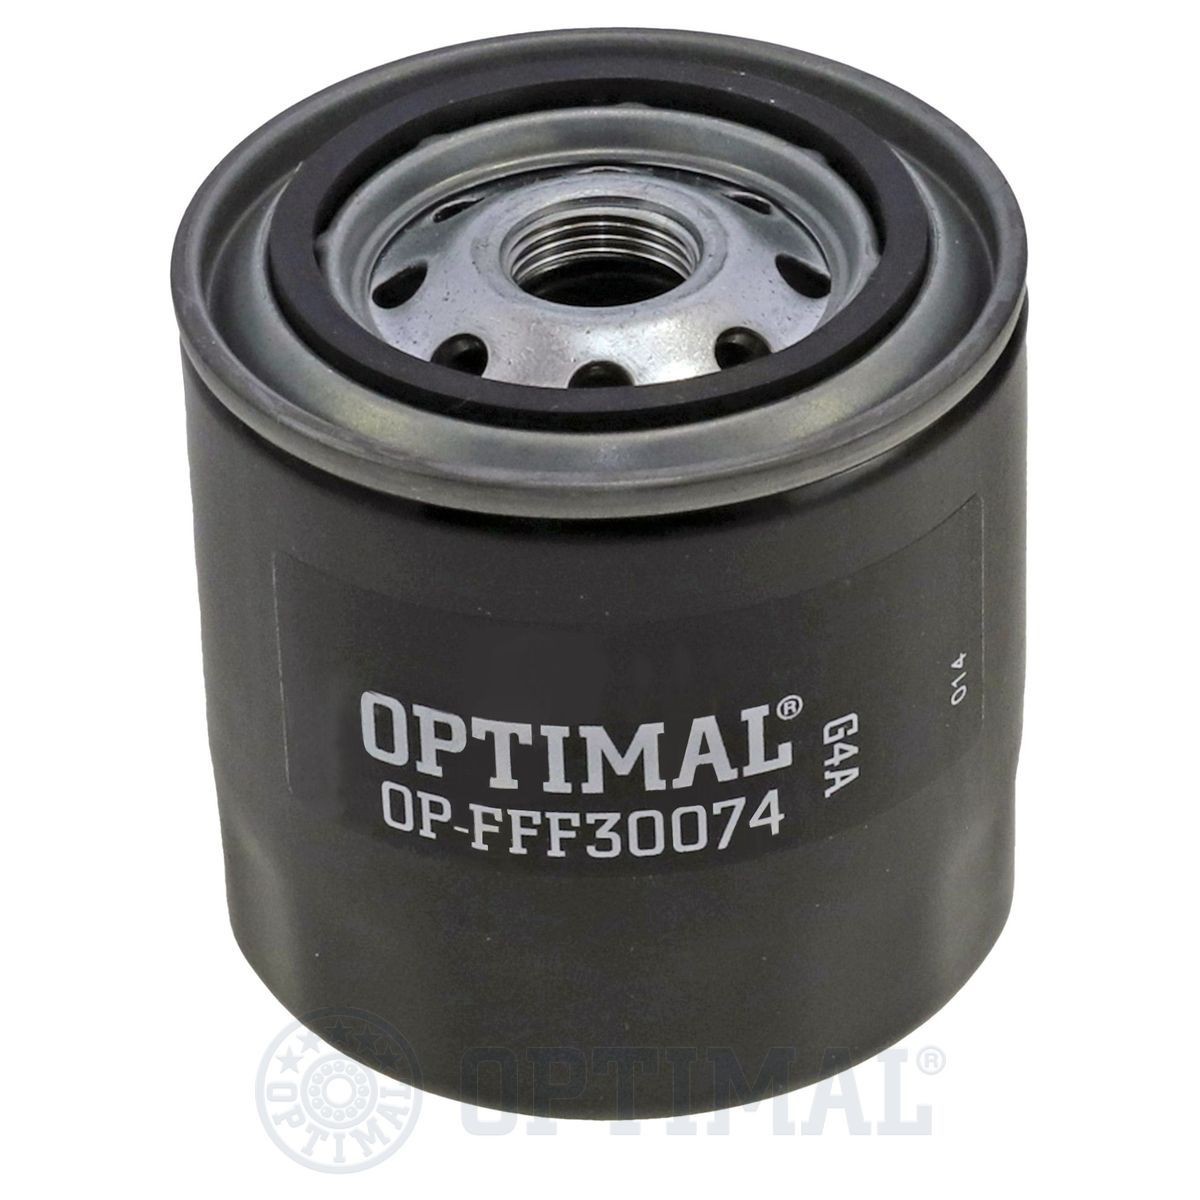 OPTIMAL OP-FFF30074 Fuel filter 2330054072